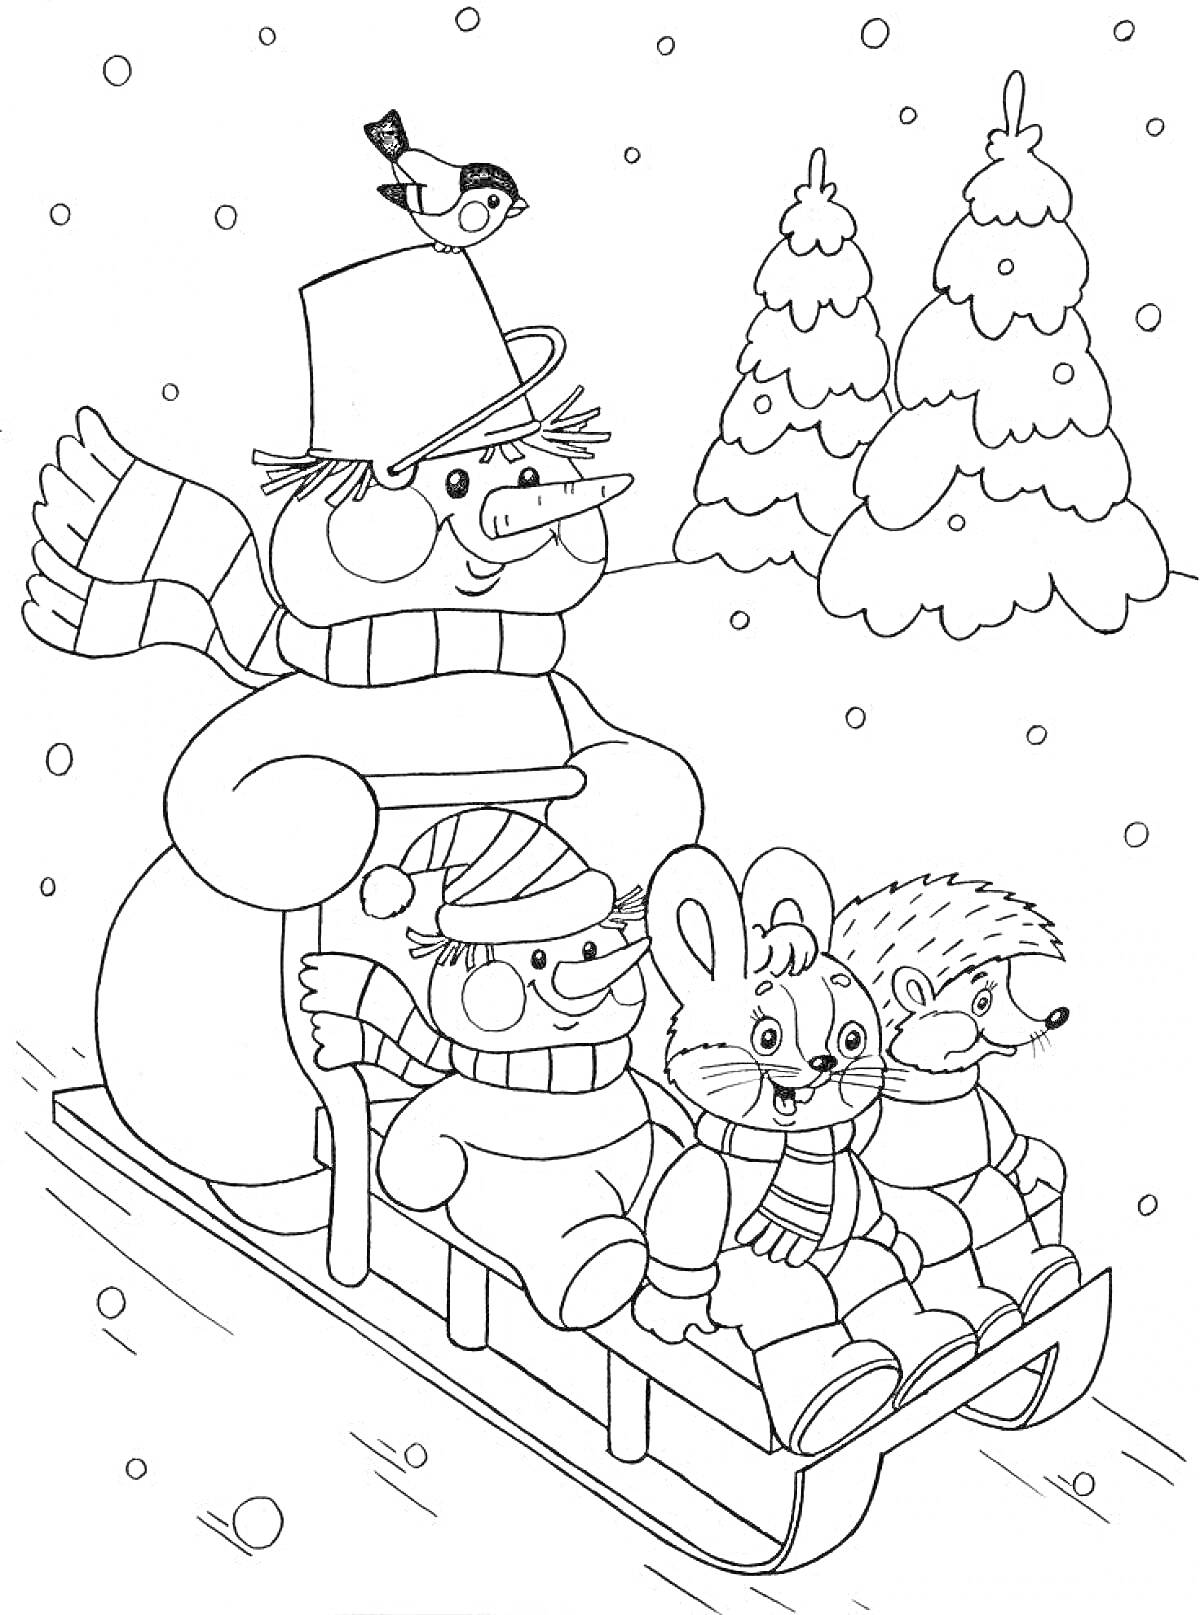 Снеговик с птичкой катает зайца, ежика и медвежонка на санках по снегу